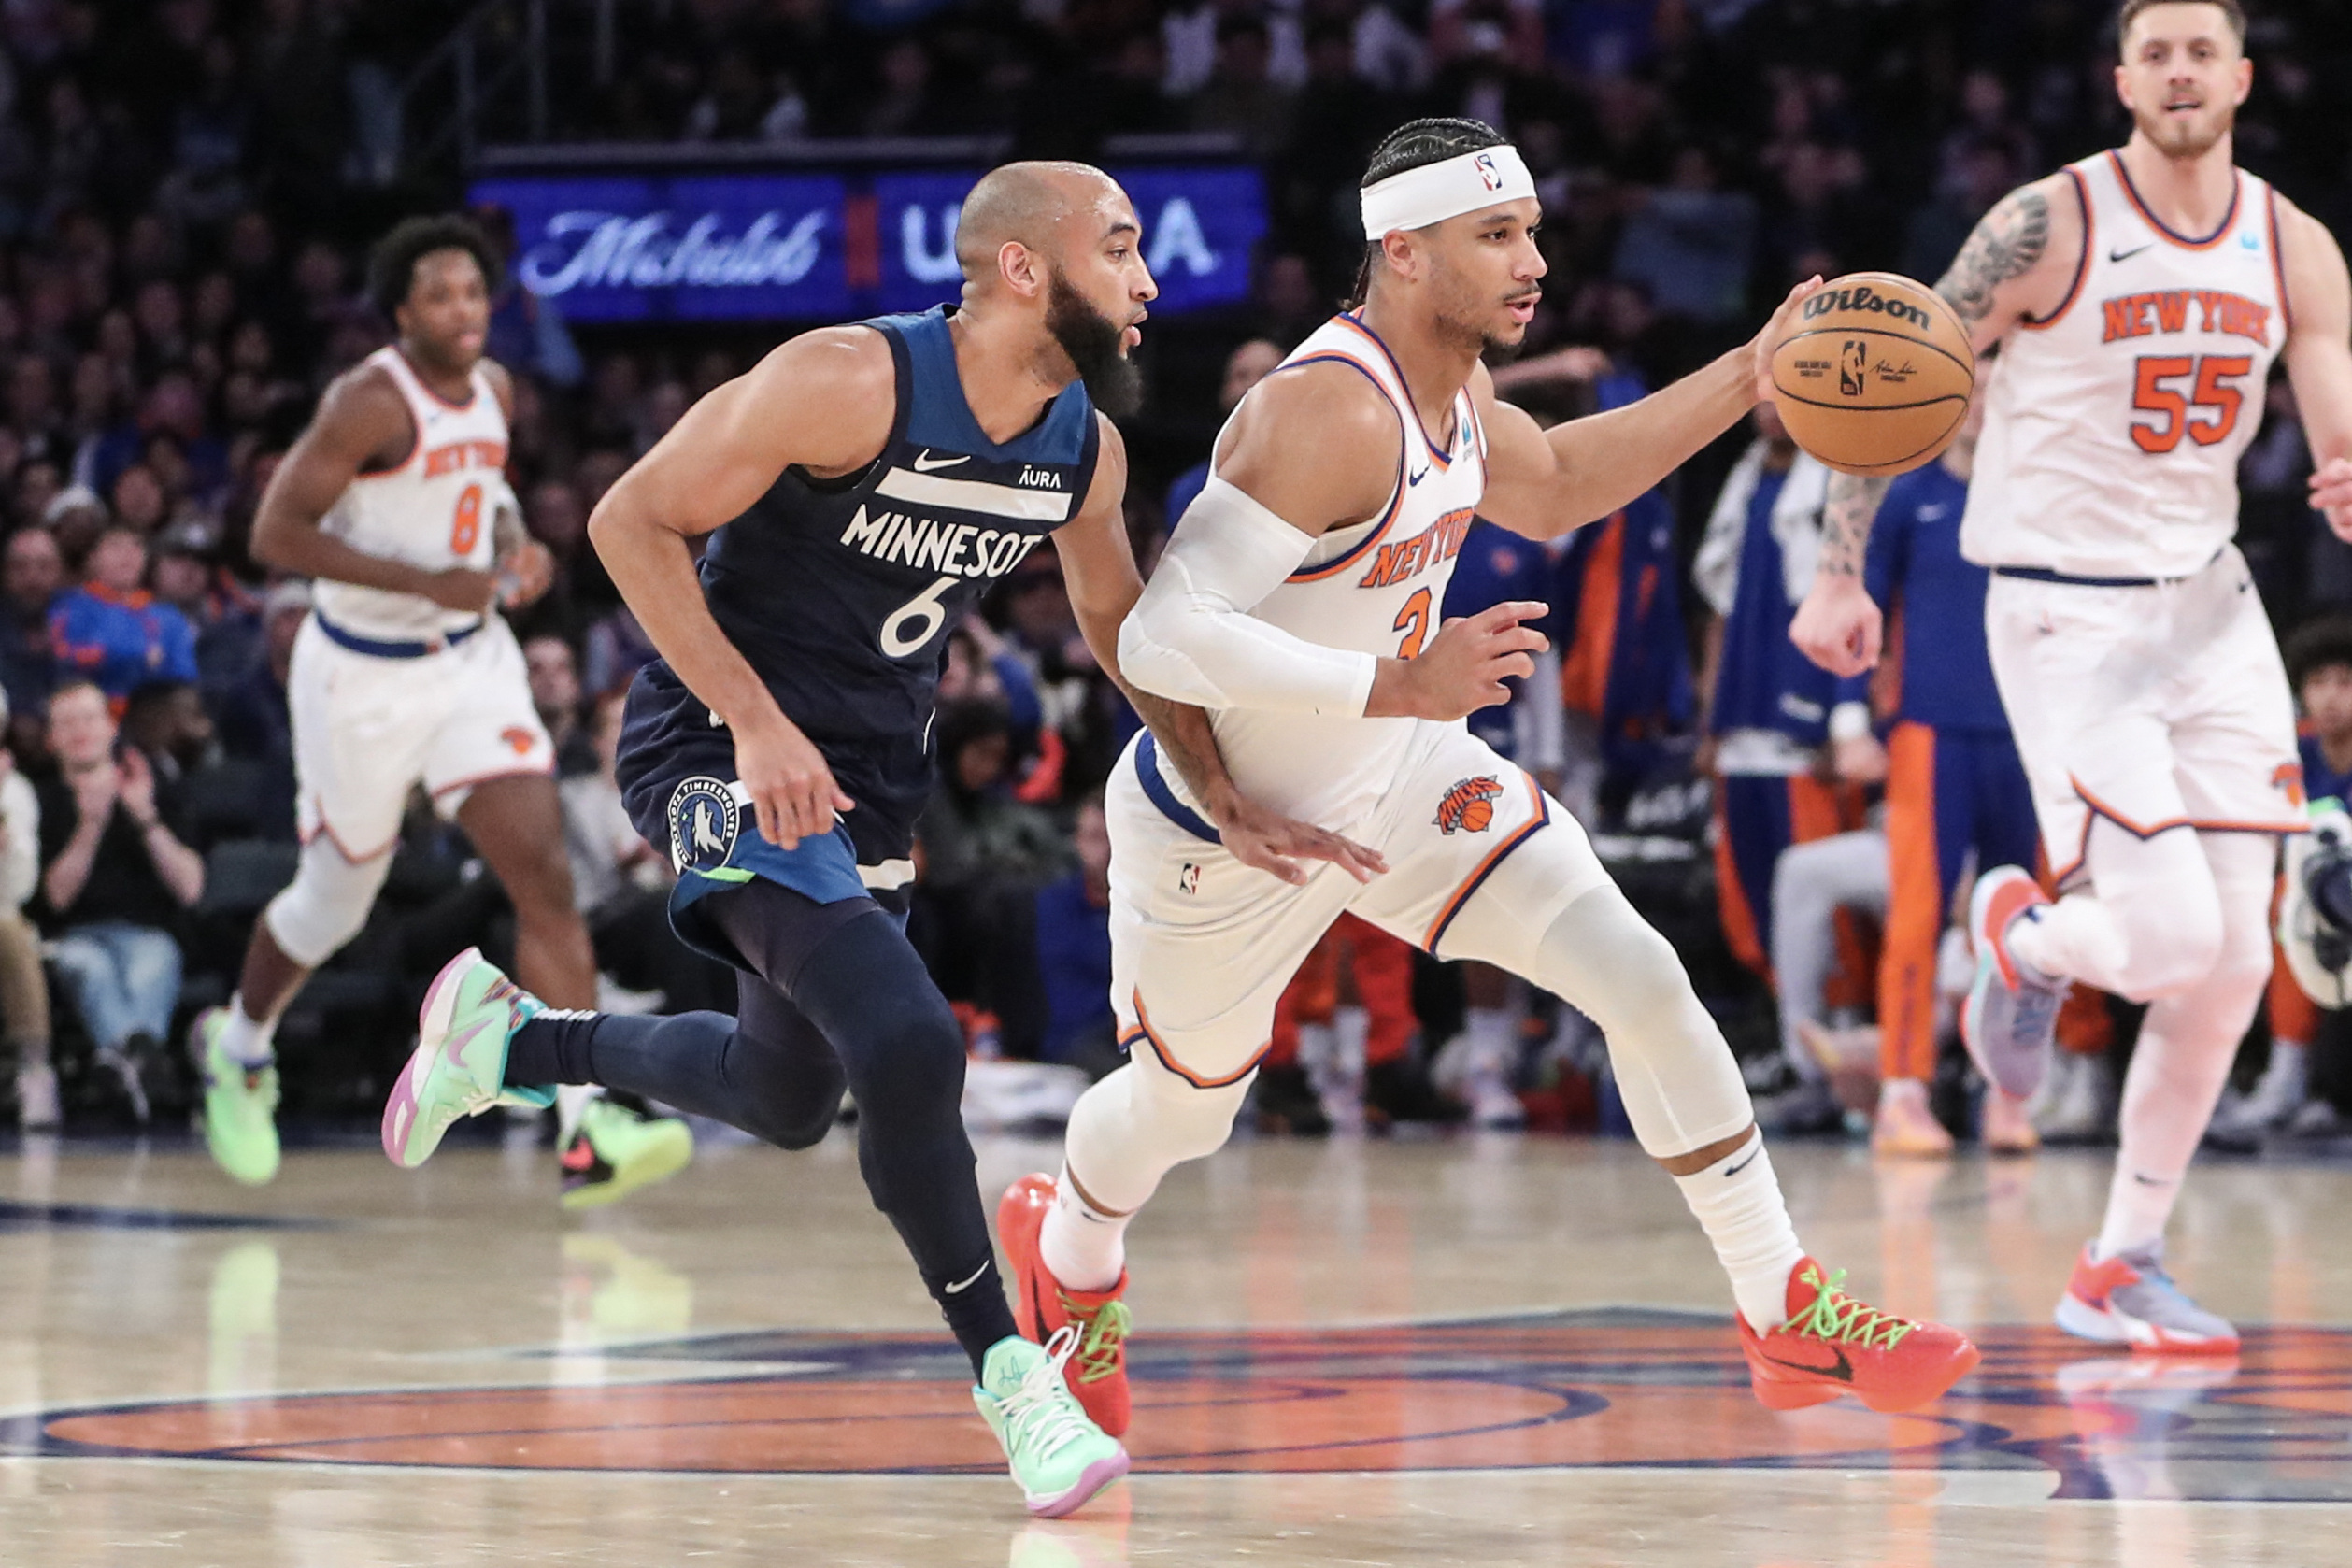 NBA: Minnesota Timberwolves abre o ano com derrota para os Knicks